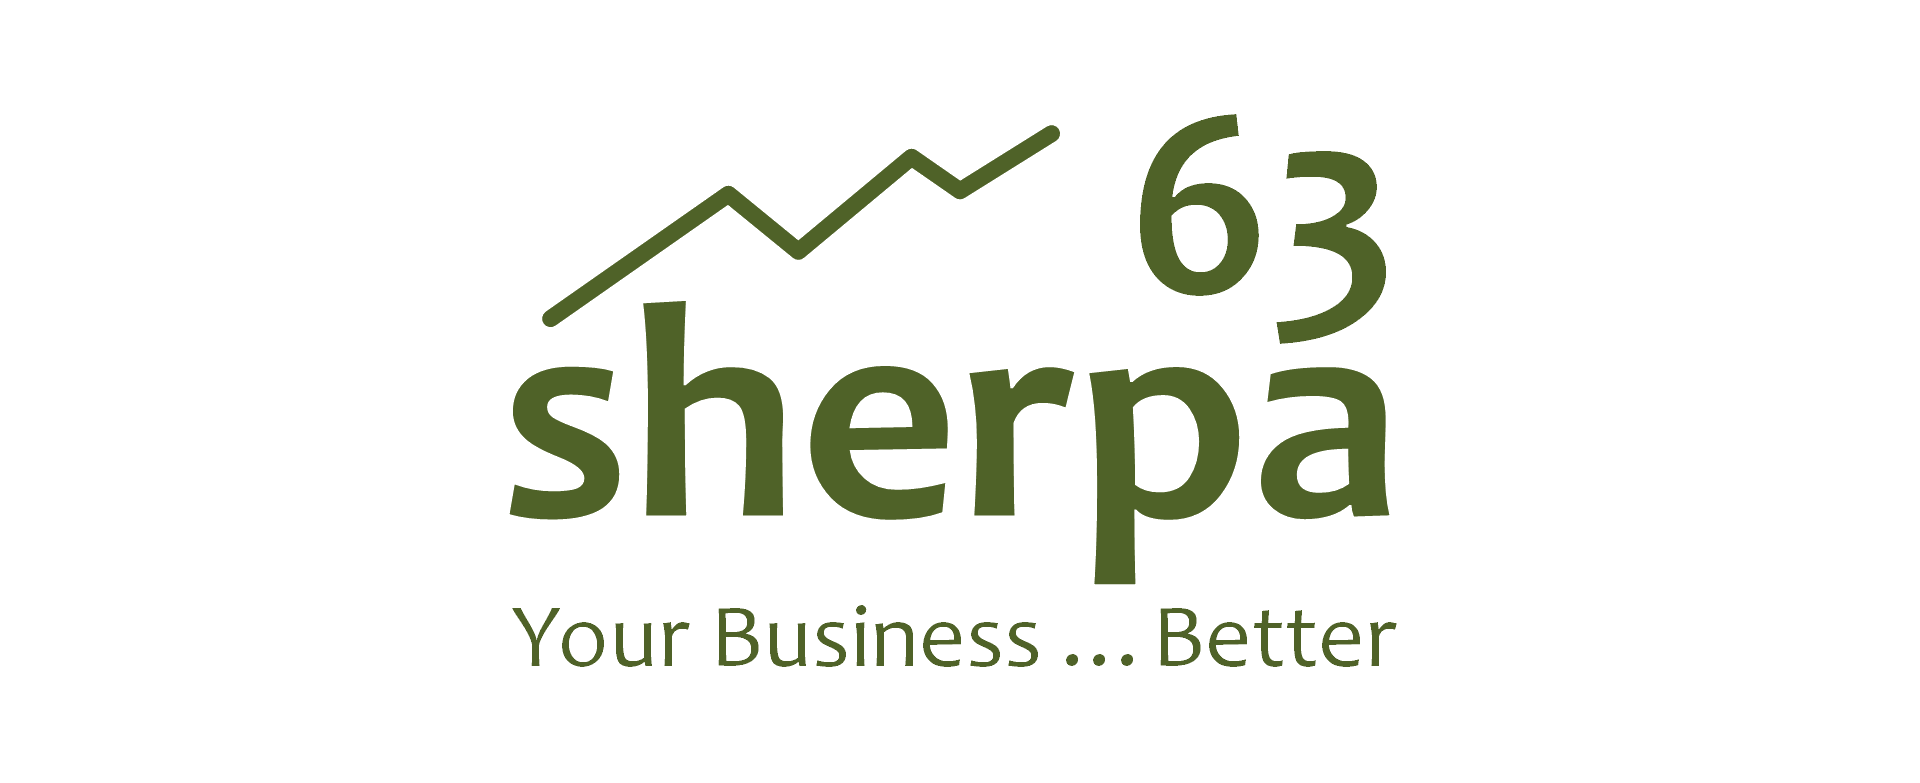 Sherpa 63 Logo